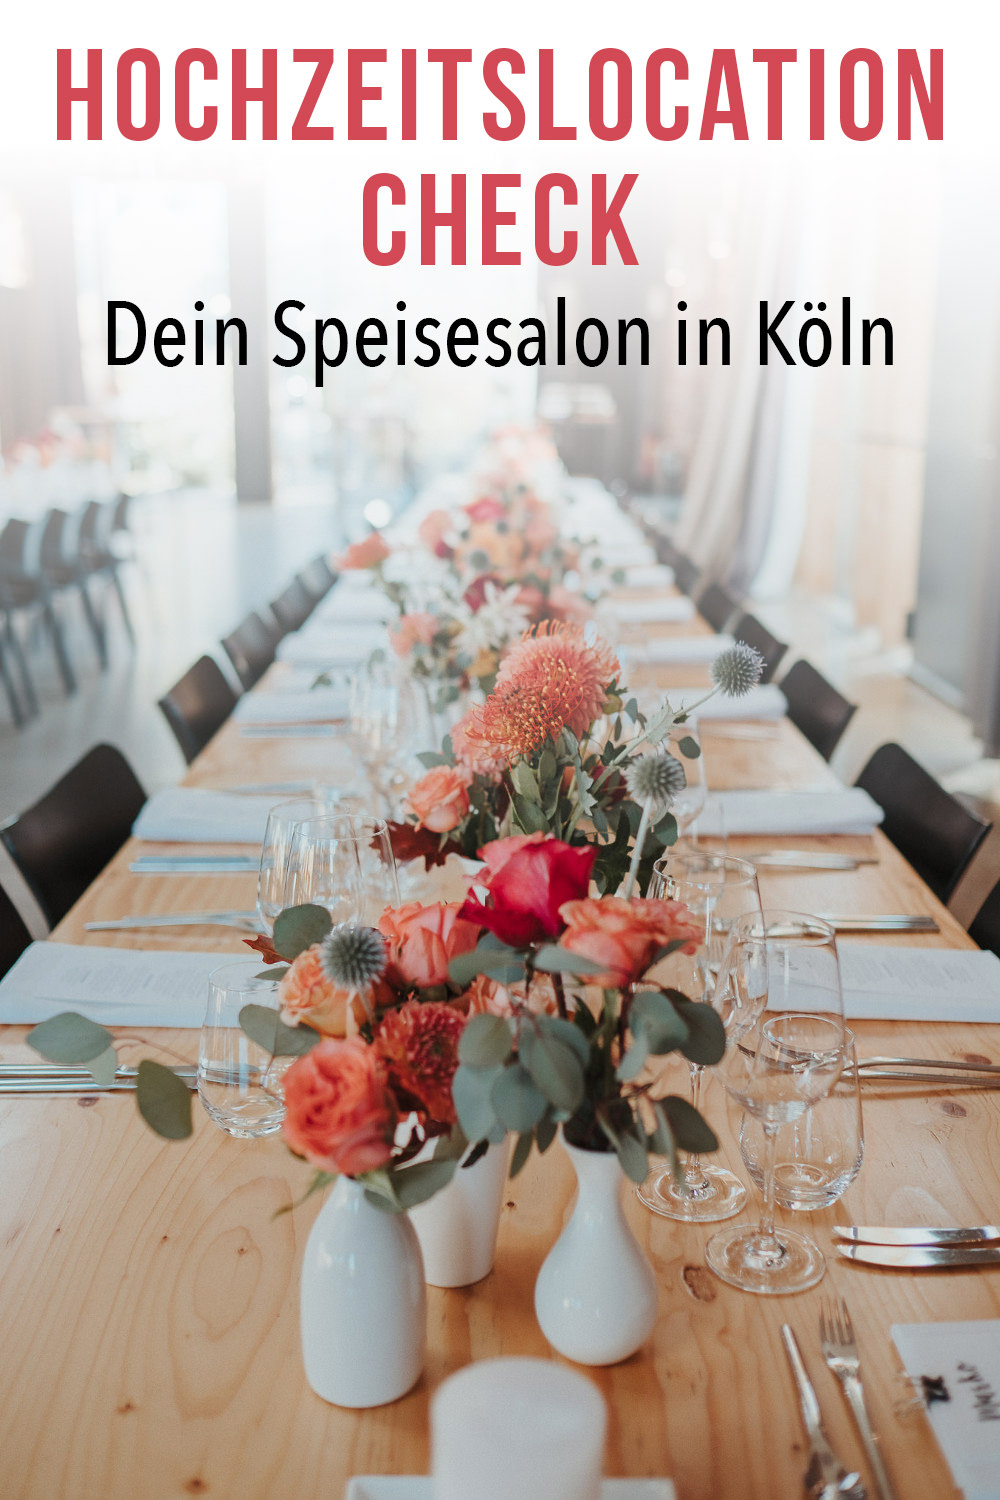 Hochzeitslocation Check: Dein Speisesalon in Köln